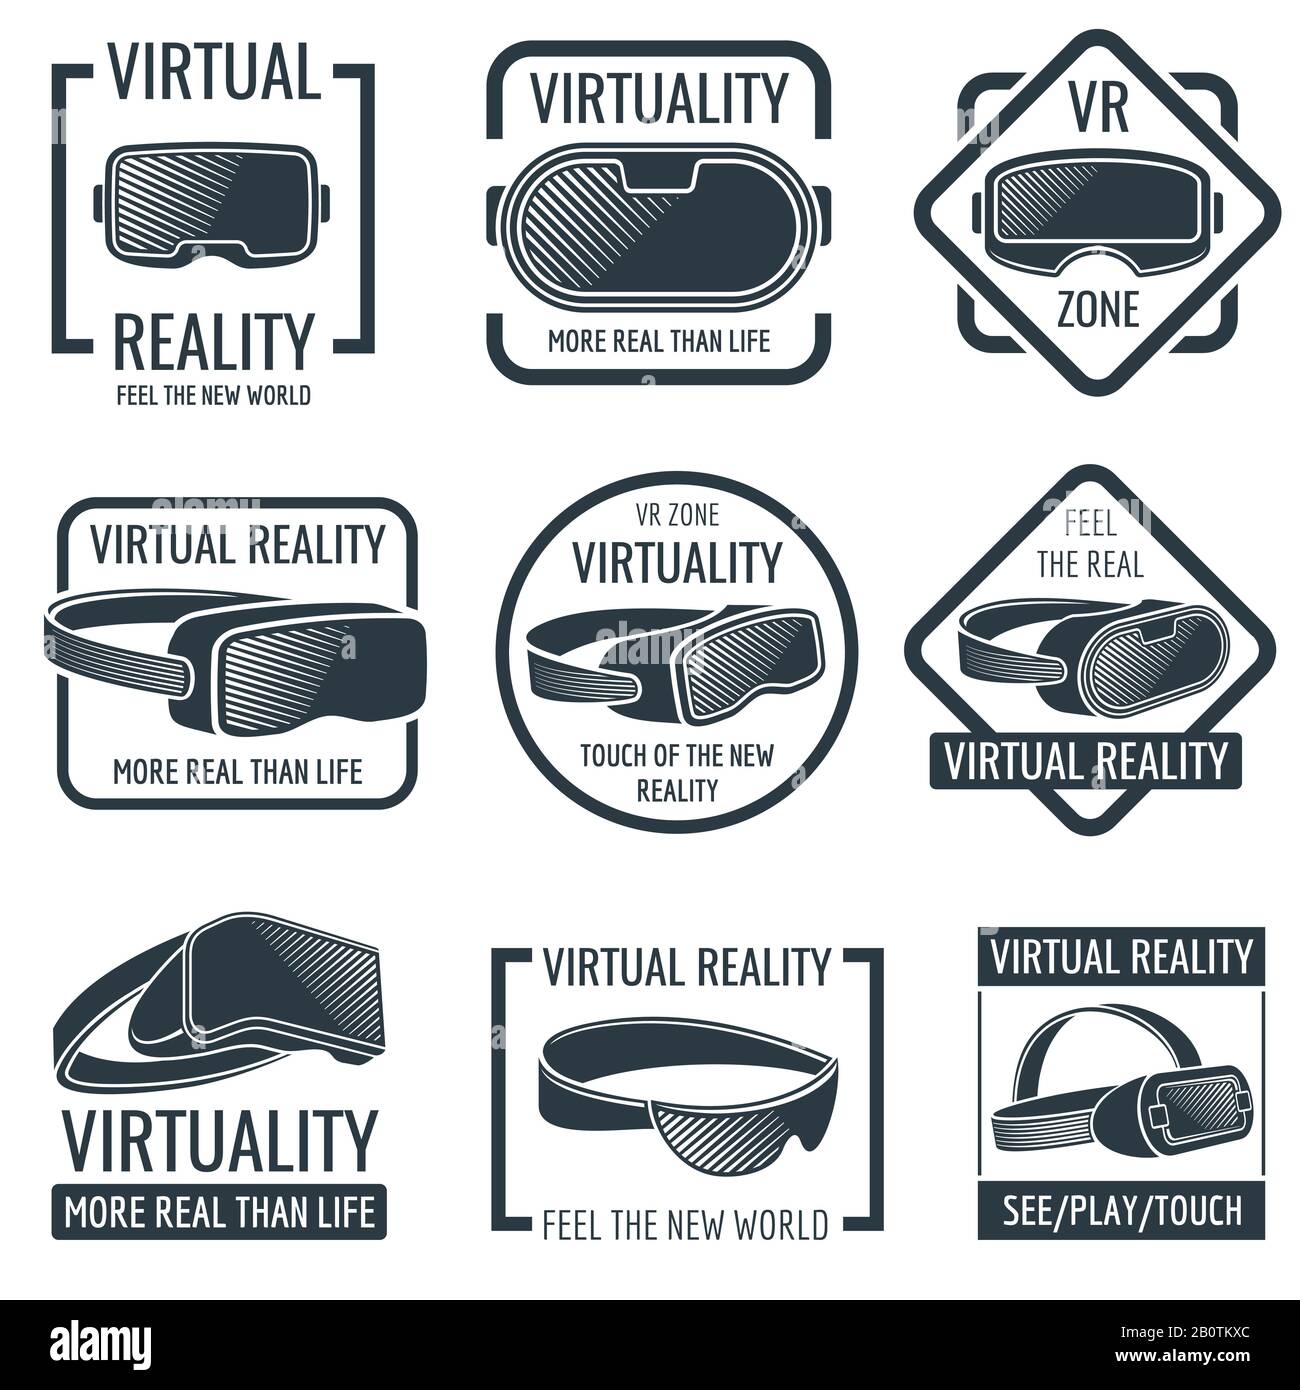 Logos futuristes de casque en réalité virtuelle. Lunettes VR étiquettes vectorielles d'affichage montées sur la tête. Dispositif virtuel de réalité, illustration du casque de tête Illustration de Vecteur